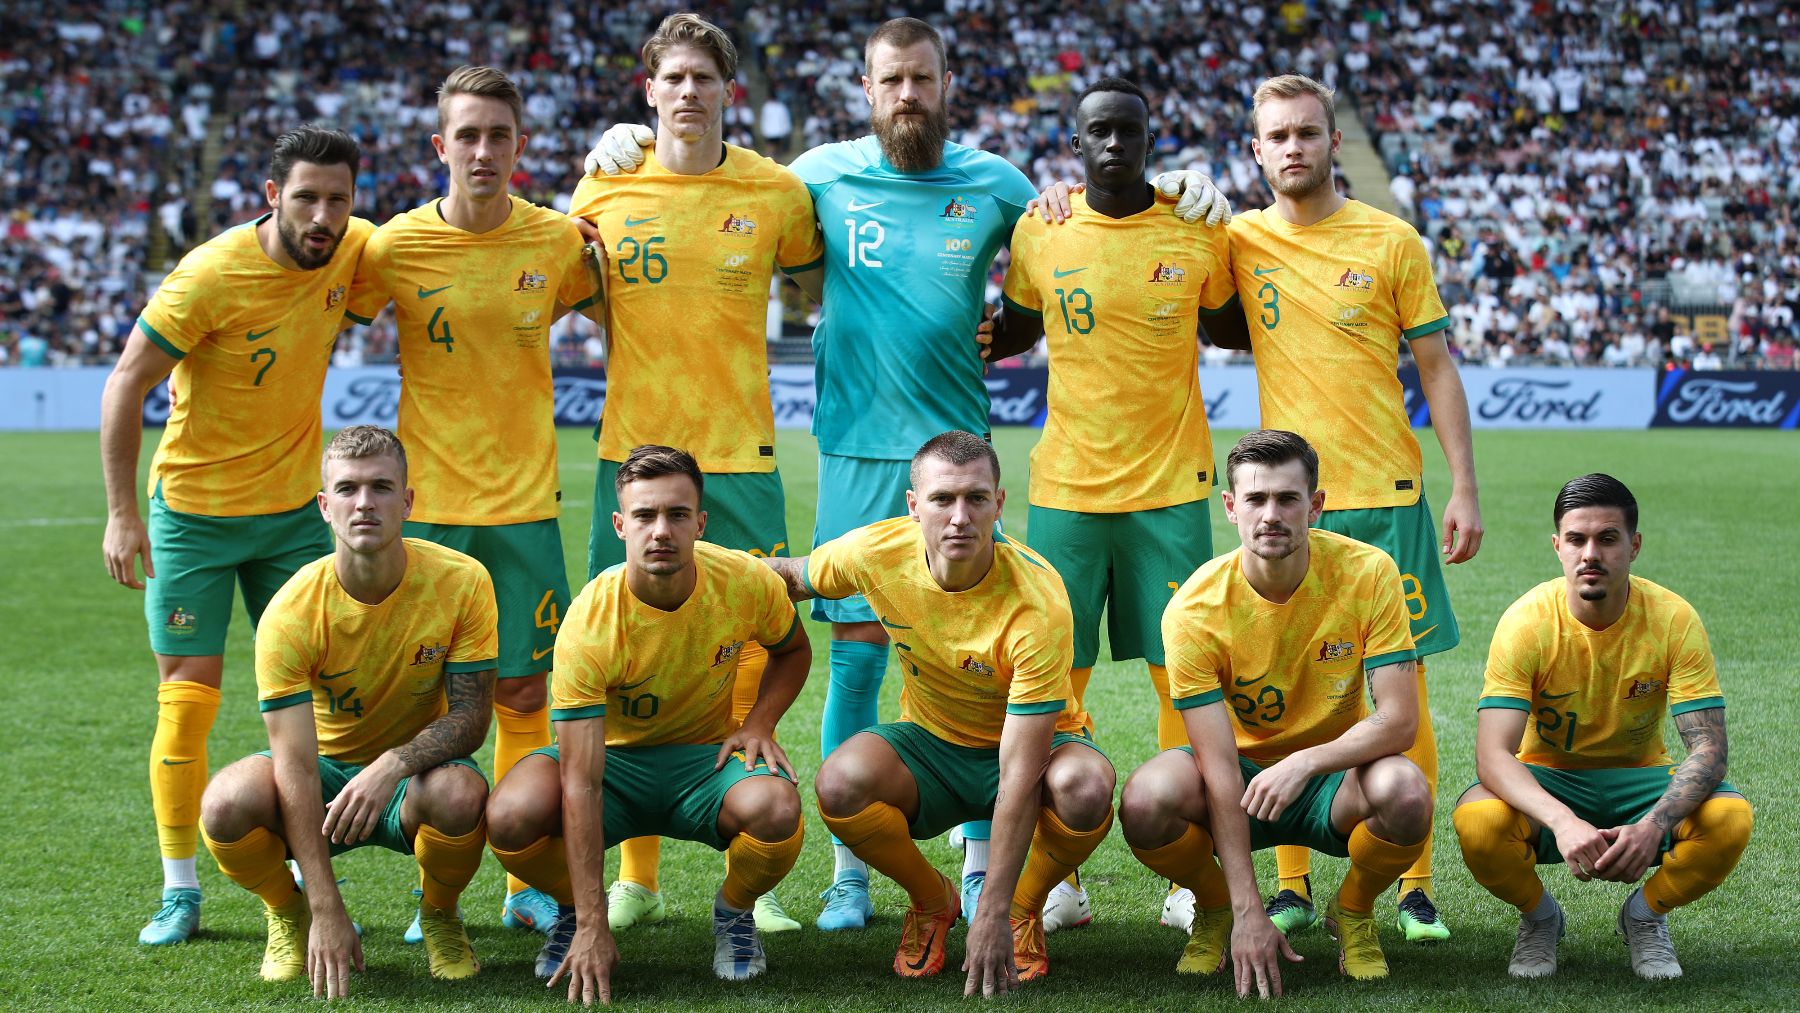 Selección de fútbol de australia